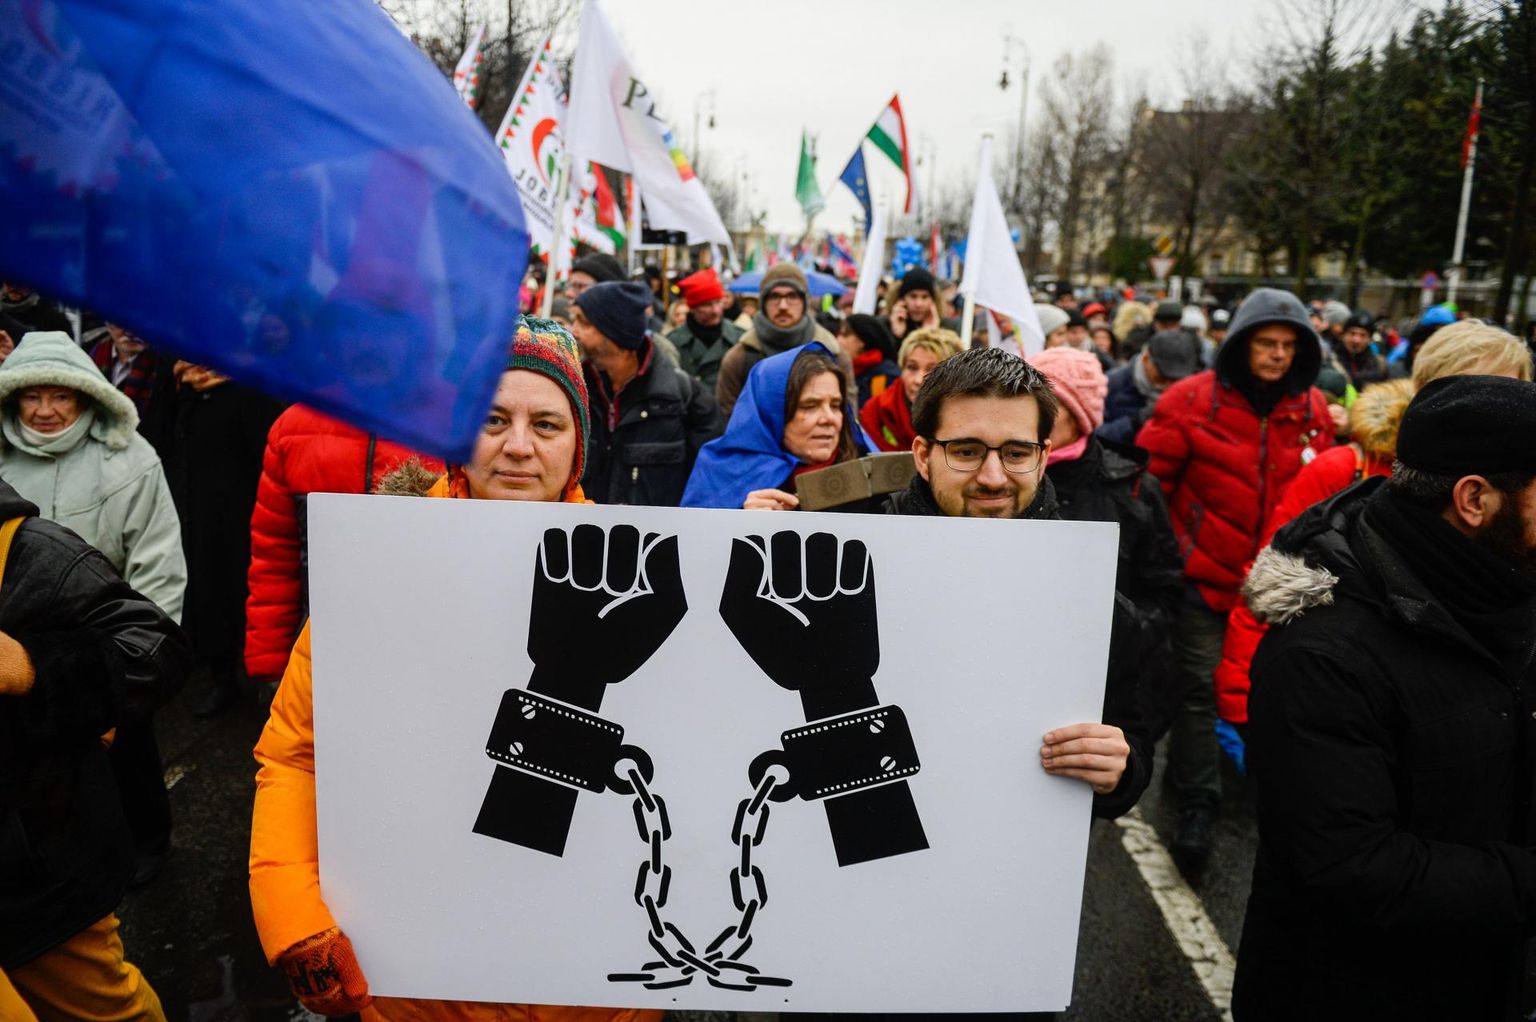 Uue tööseaduse ja Ungari peaminister Viktor Orbáni valitsuse vastu meelt avaldavad protestijad Budapestis. Freedom House’i hinnangul on ka kogunemisvabadus selles riigis ohus.